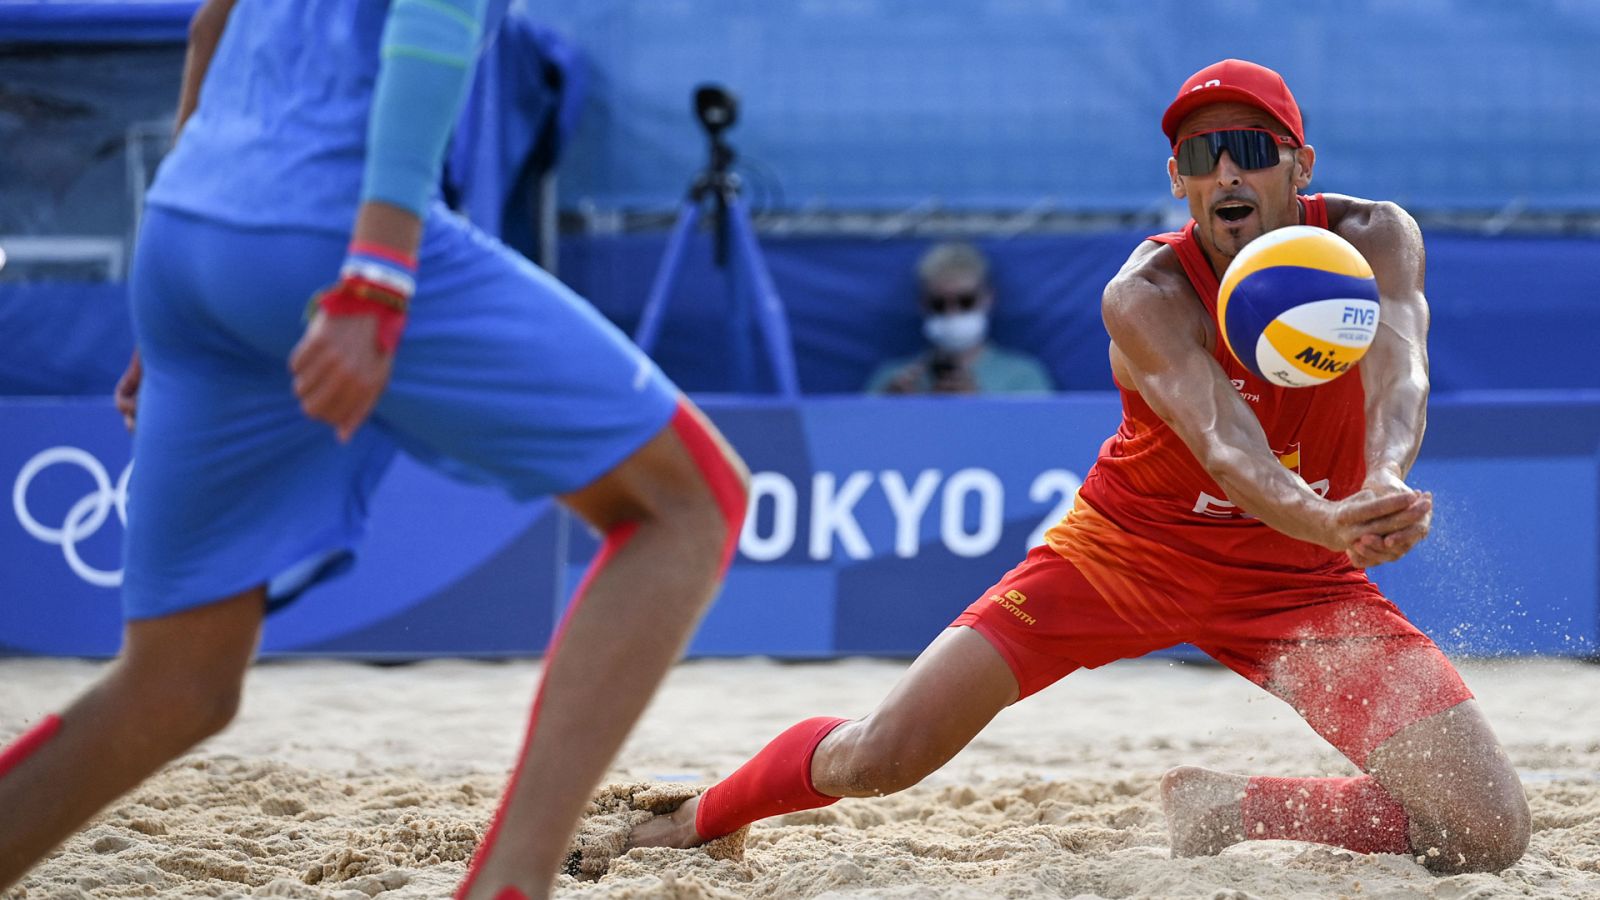 Voley playa - Masculino: España - Rusia. Juegos Olímpicos de Tokio 2020